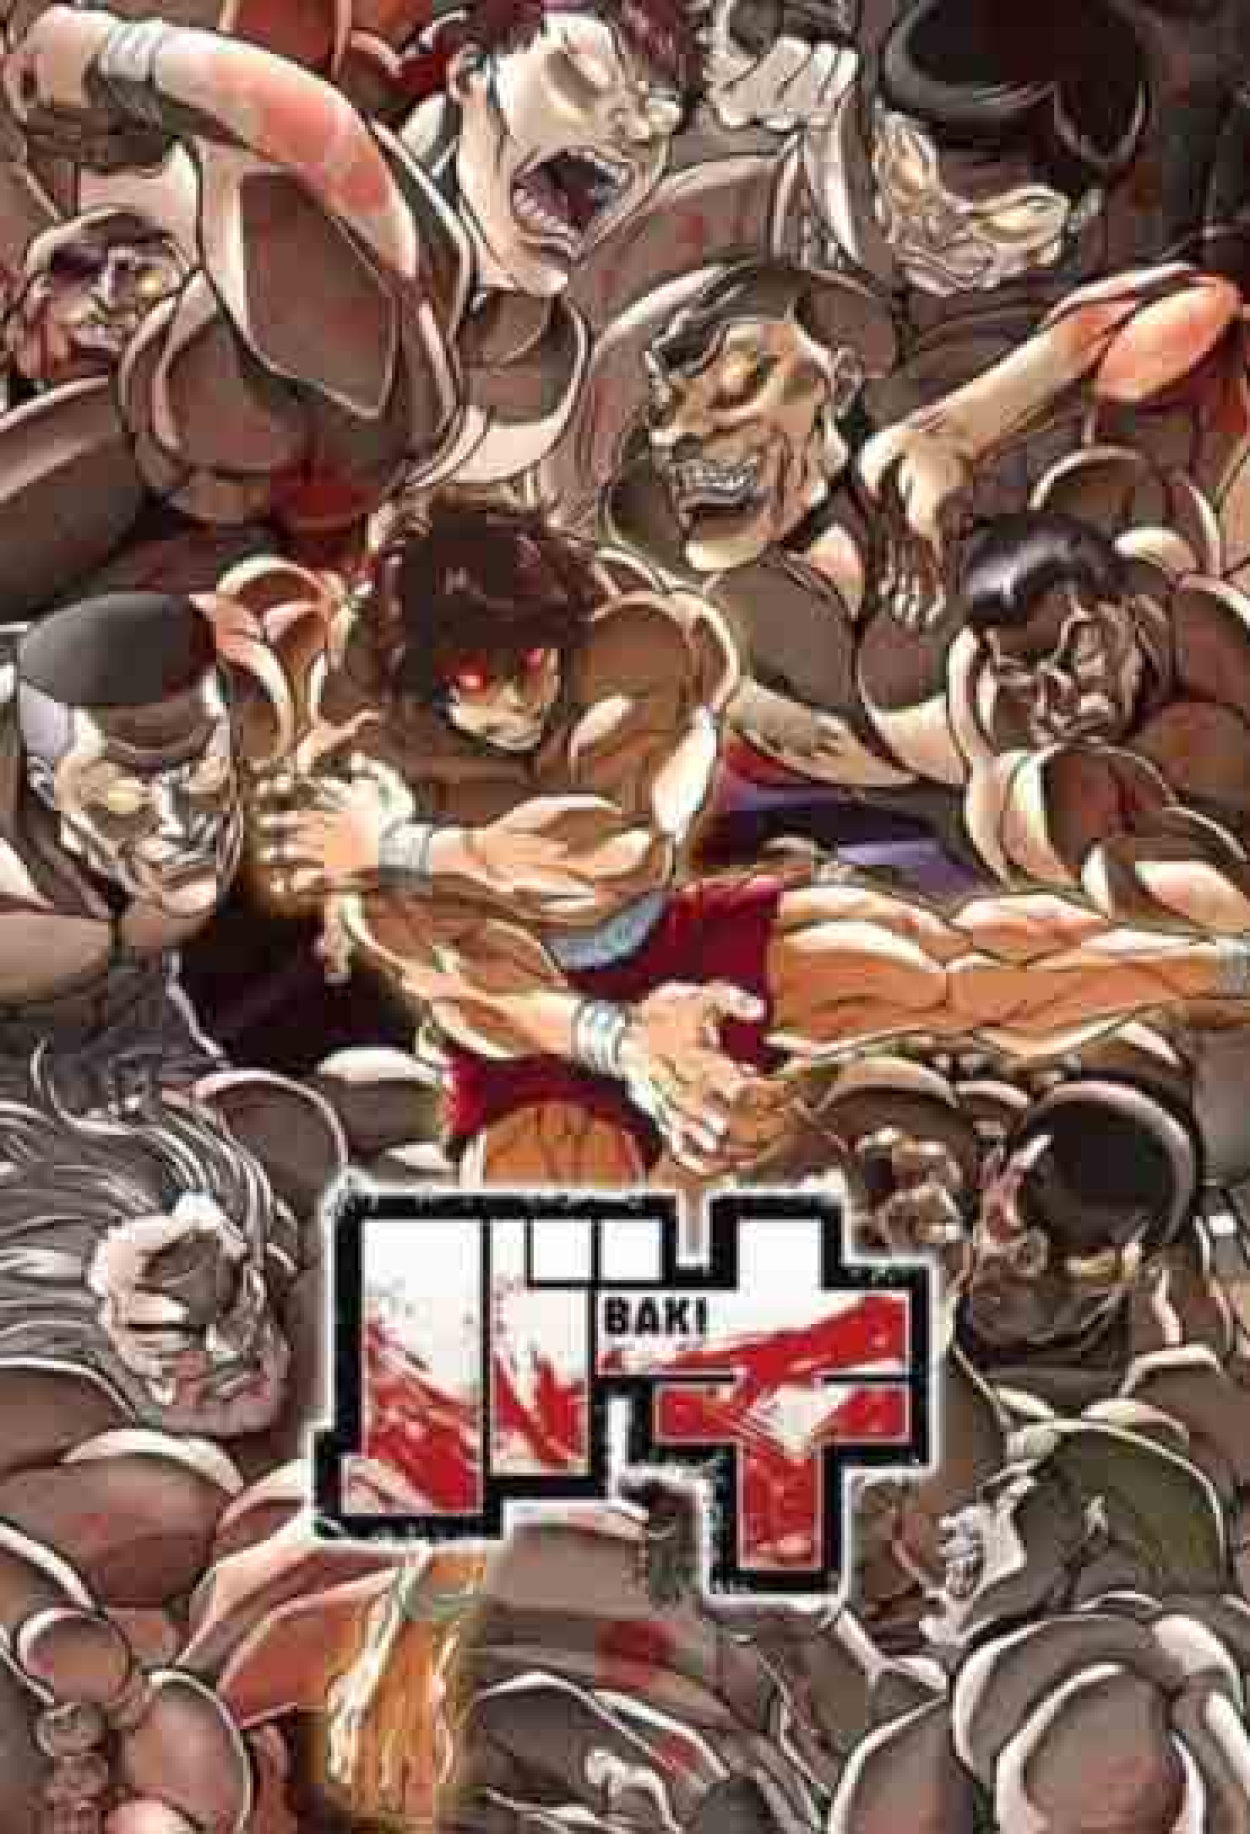 Baki Hanma: novo anime de luta ganha trailer oficial pela Netflix - Cinema10